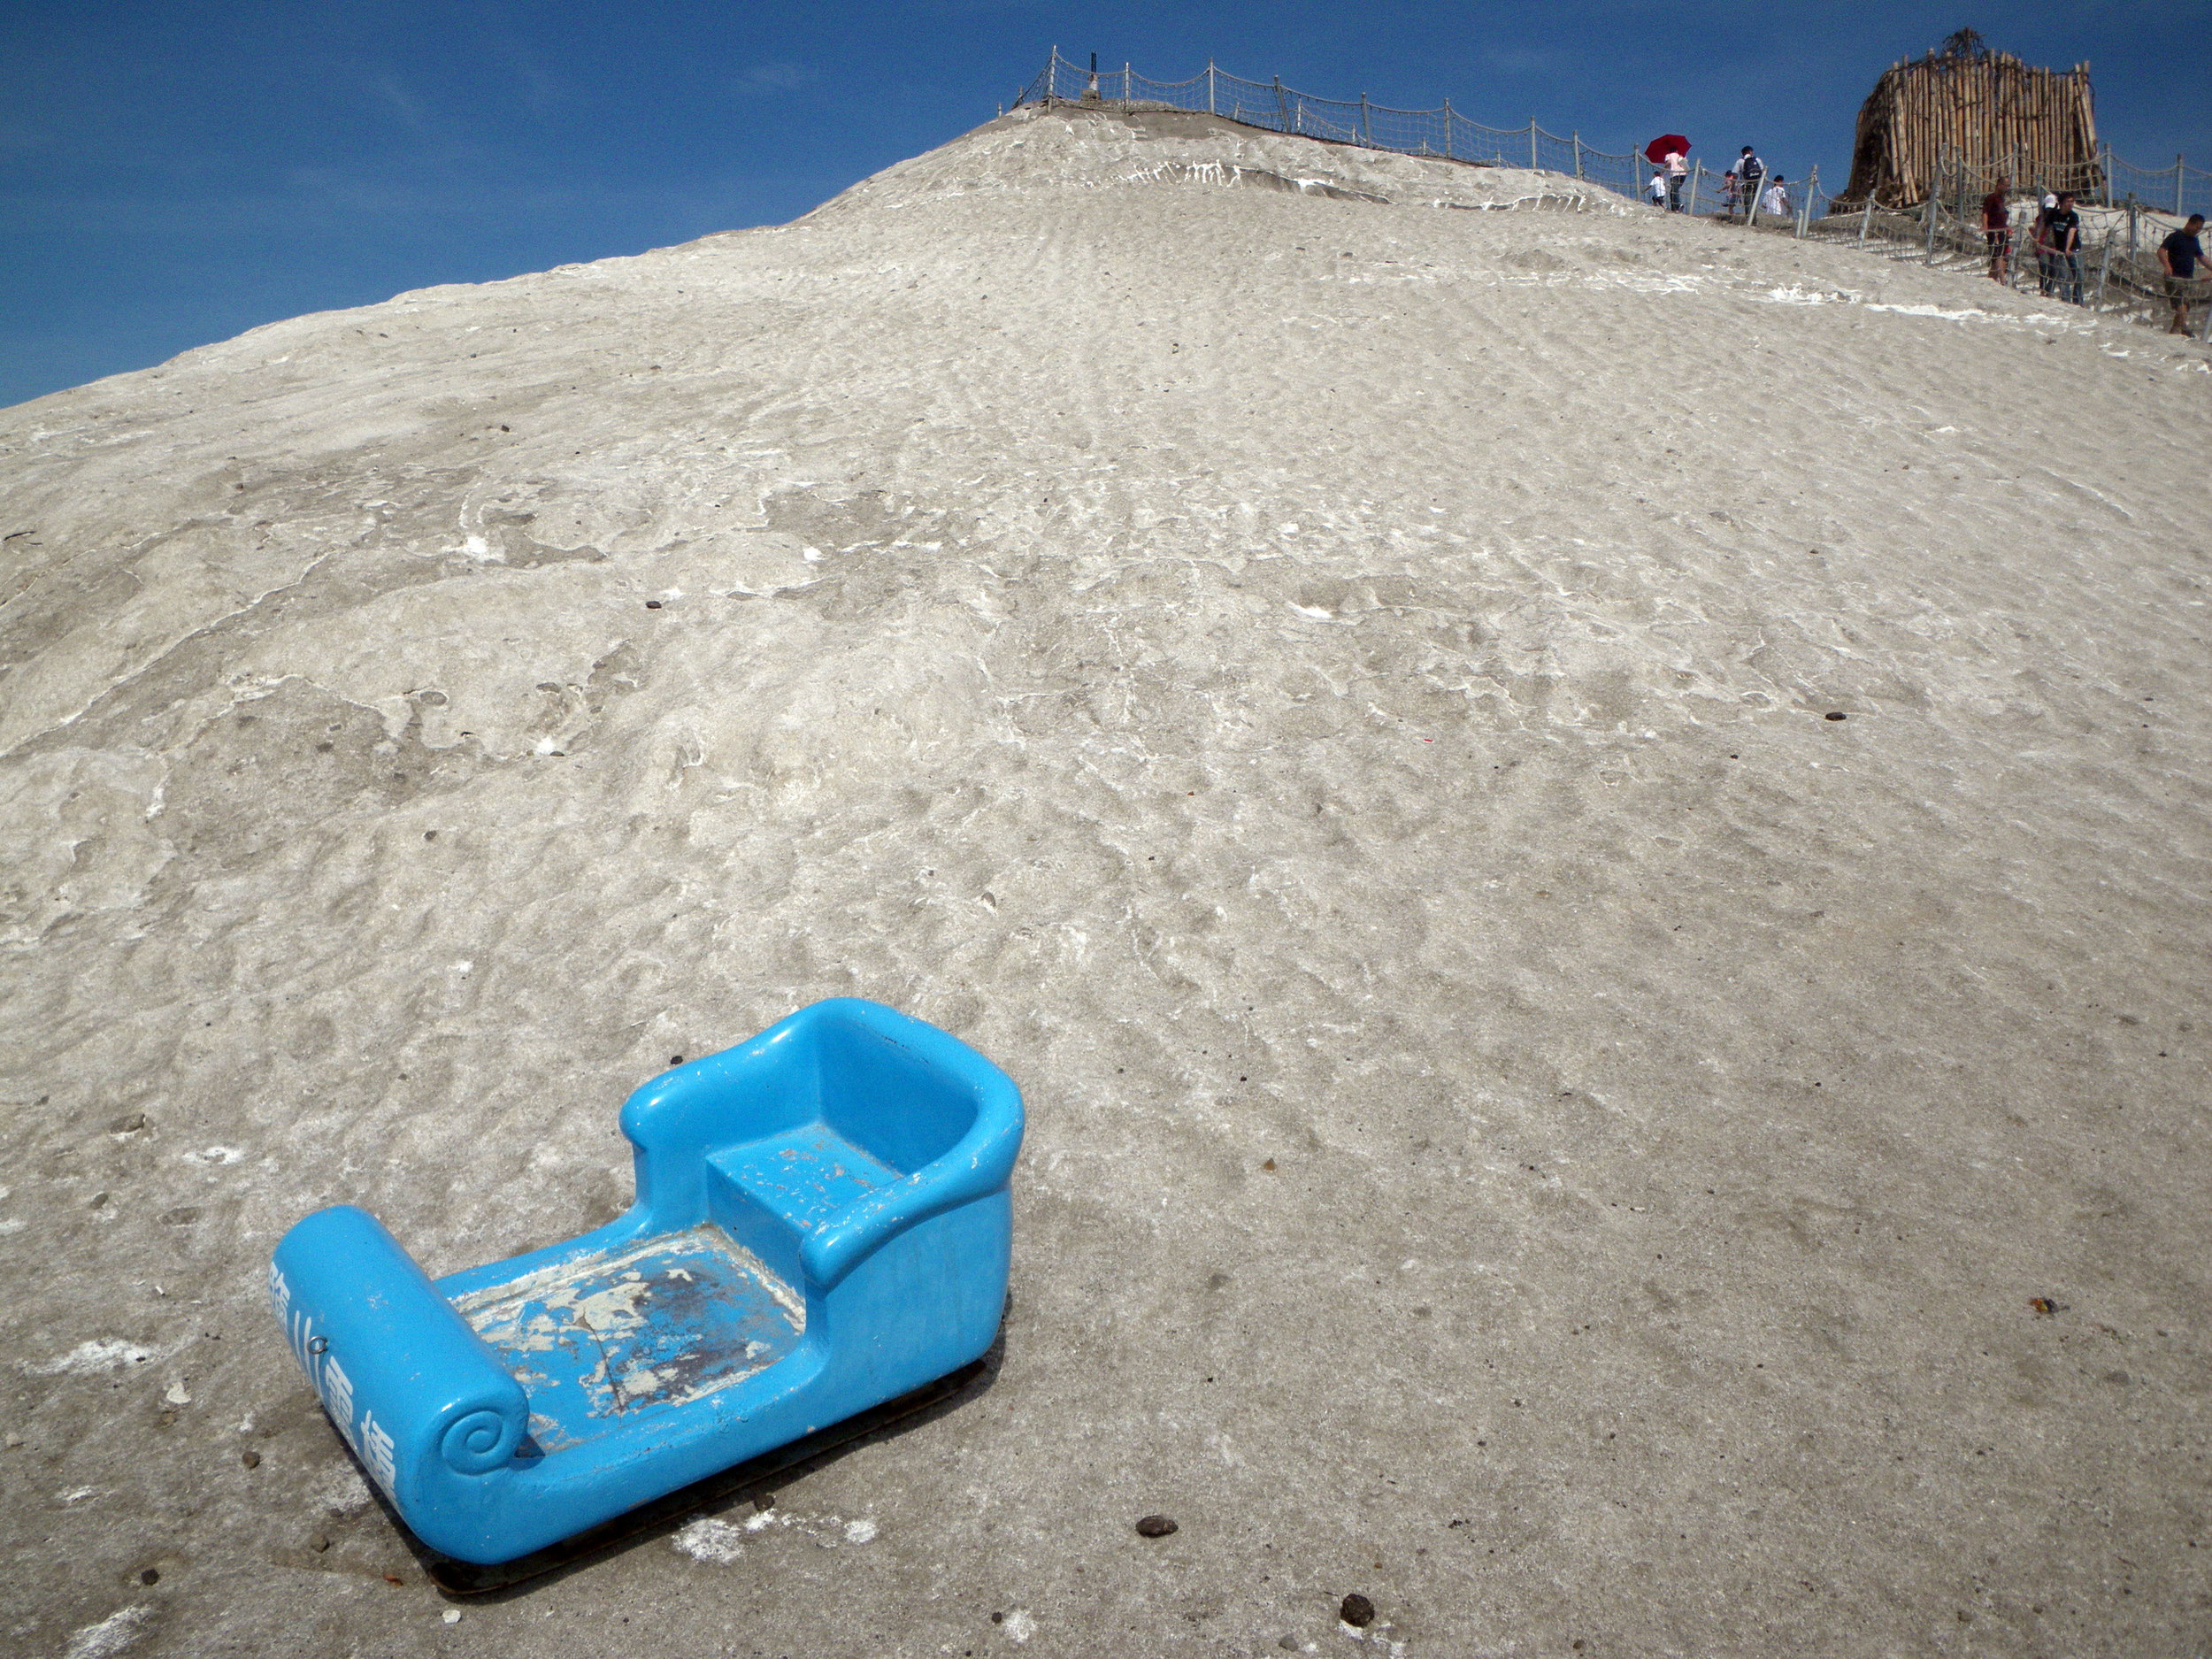 salt mountain sledding.jpg